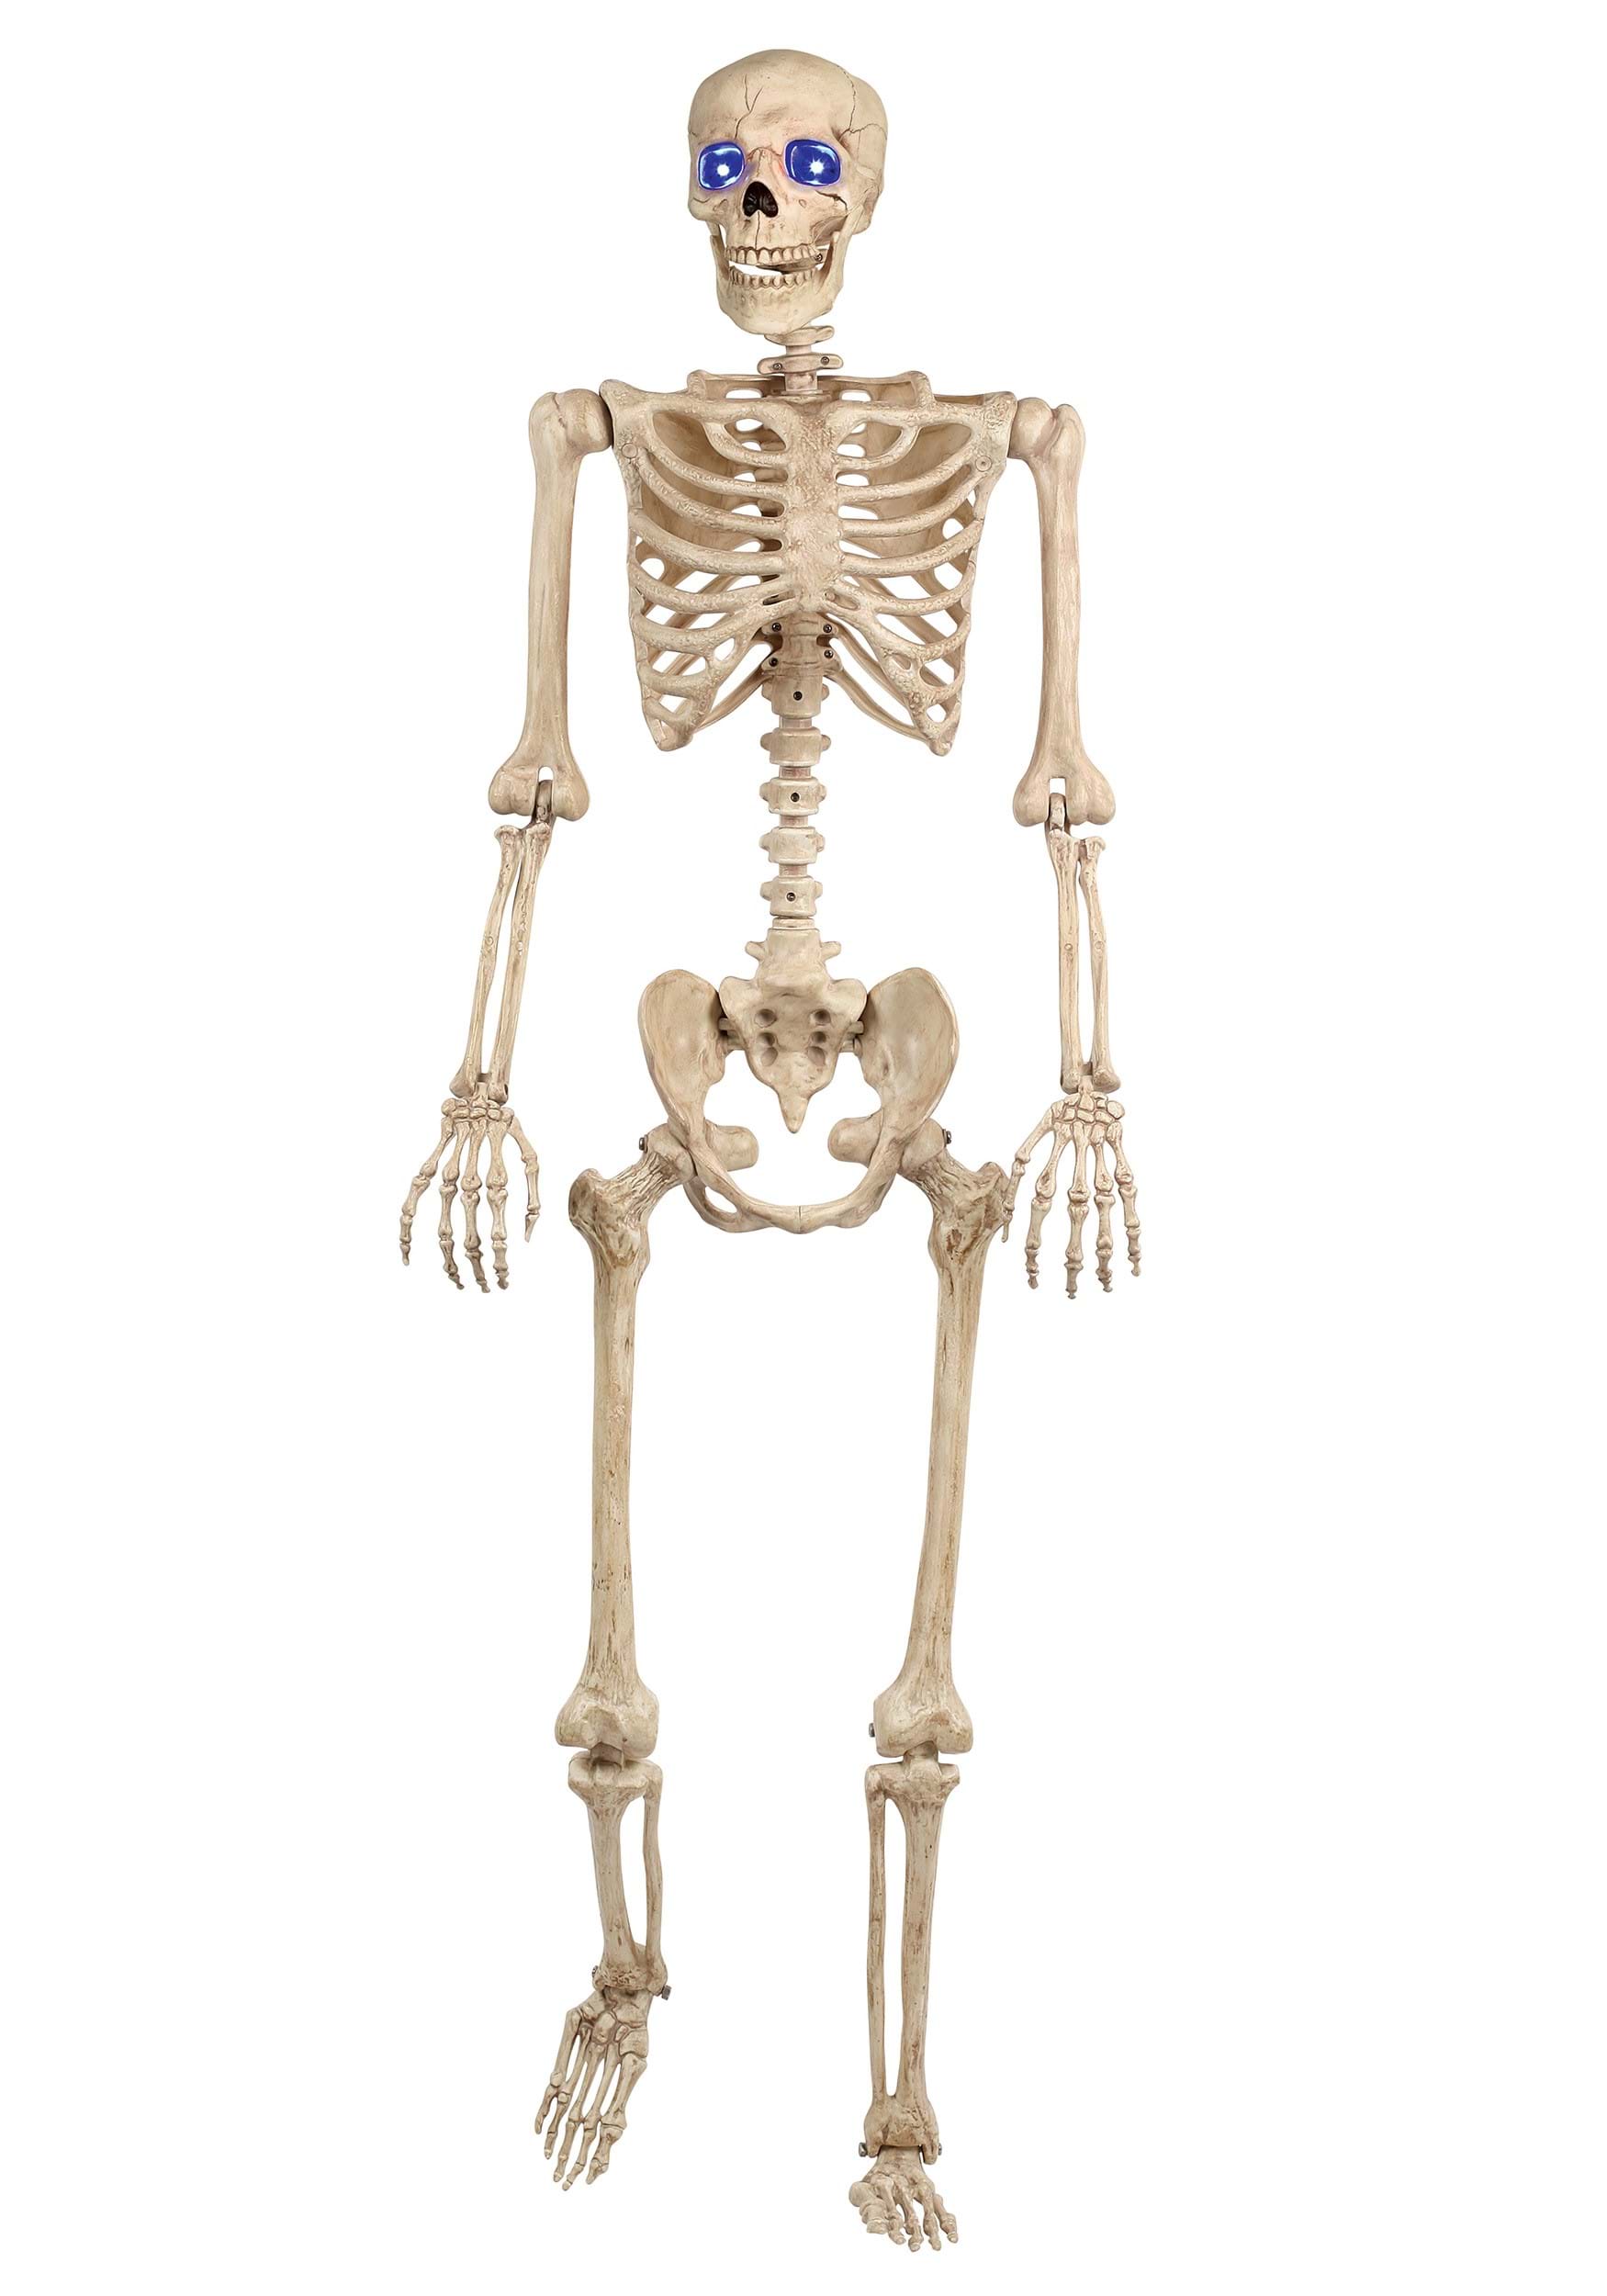 Light Up 60 Inch Skeleton Prop | Skeleton Halloween Decorations